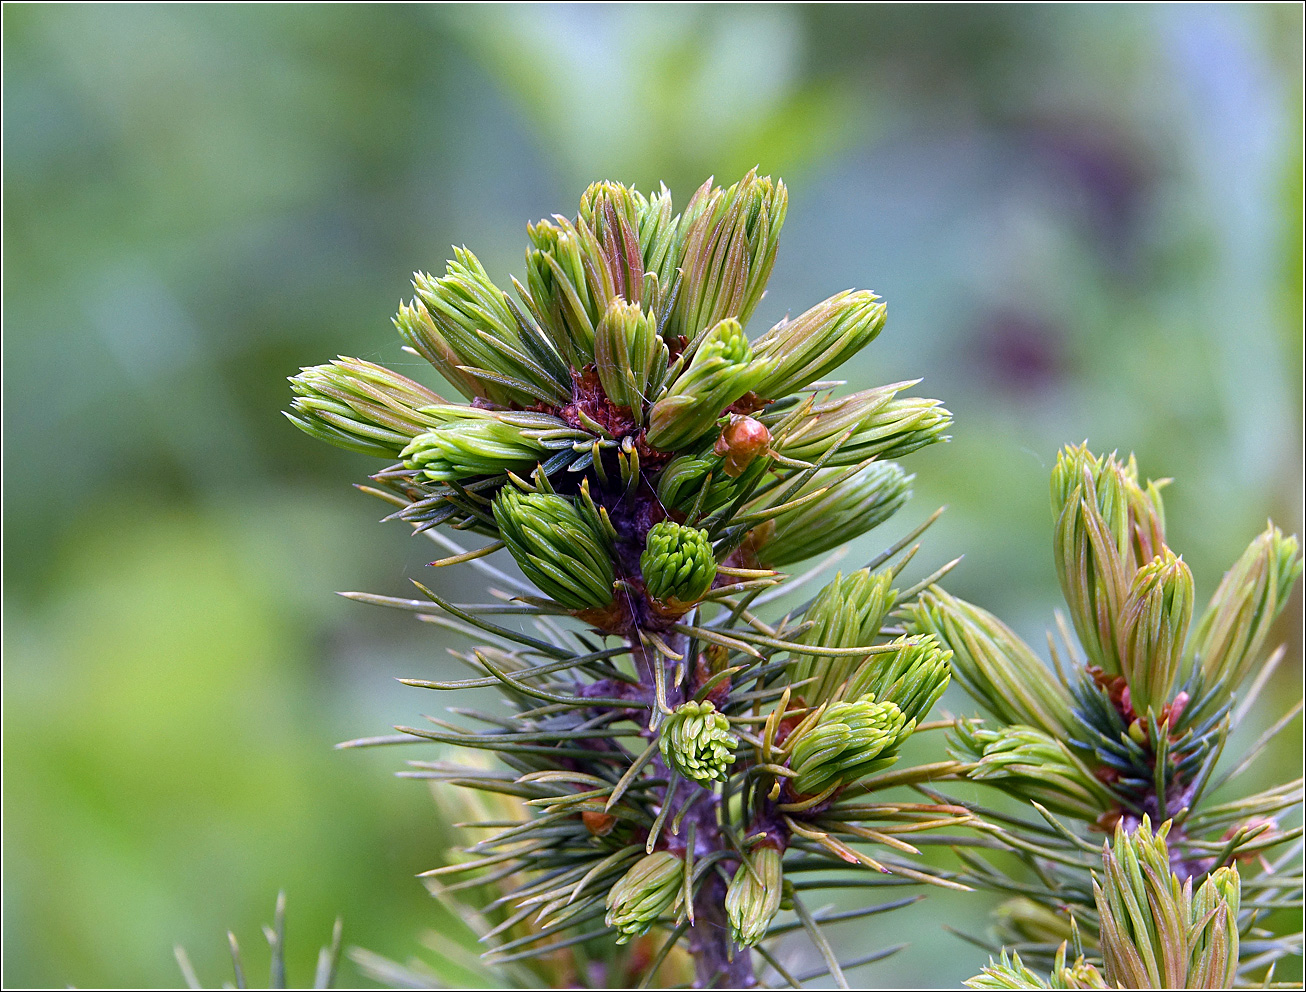 Image of Picea glauca specimen.